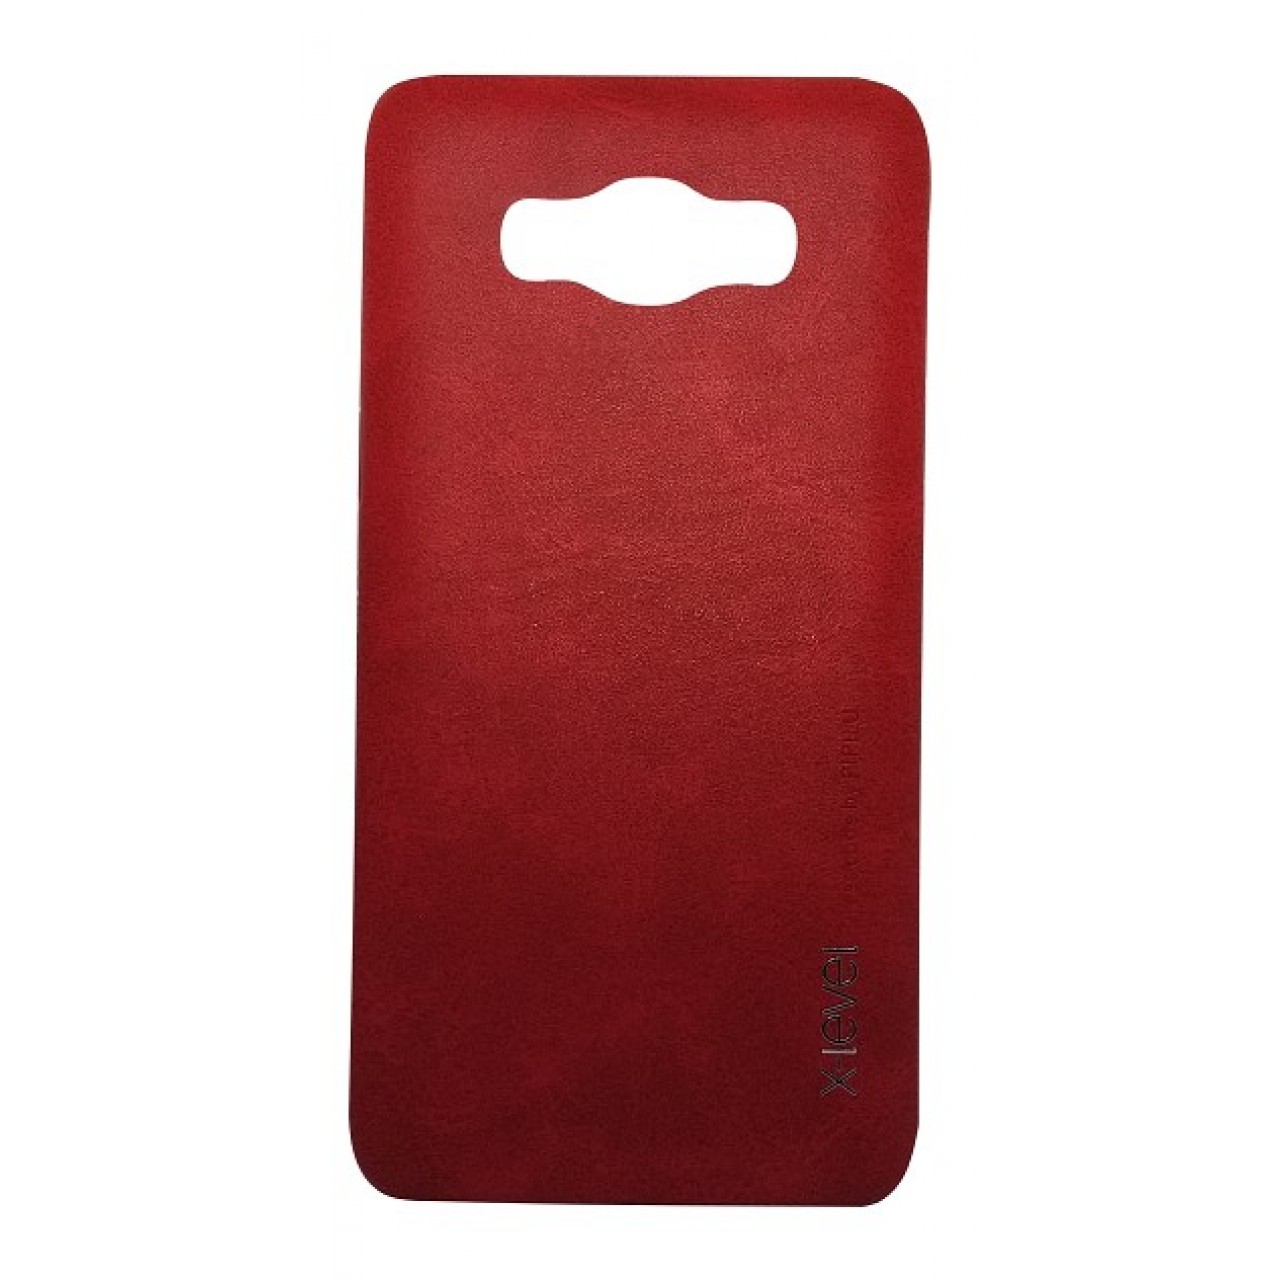 Θήκη Samsung Galaxy J5 2016 ( J510 ) PU Leather Vintage X-Level - 2281 - Κόκκινο - OEM